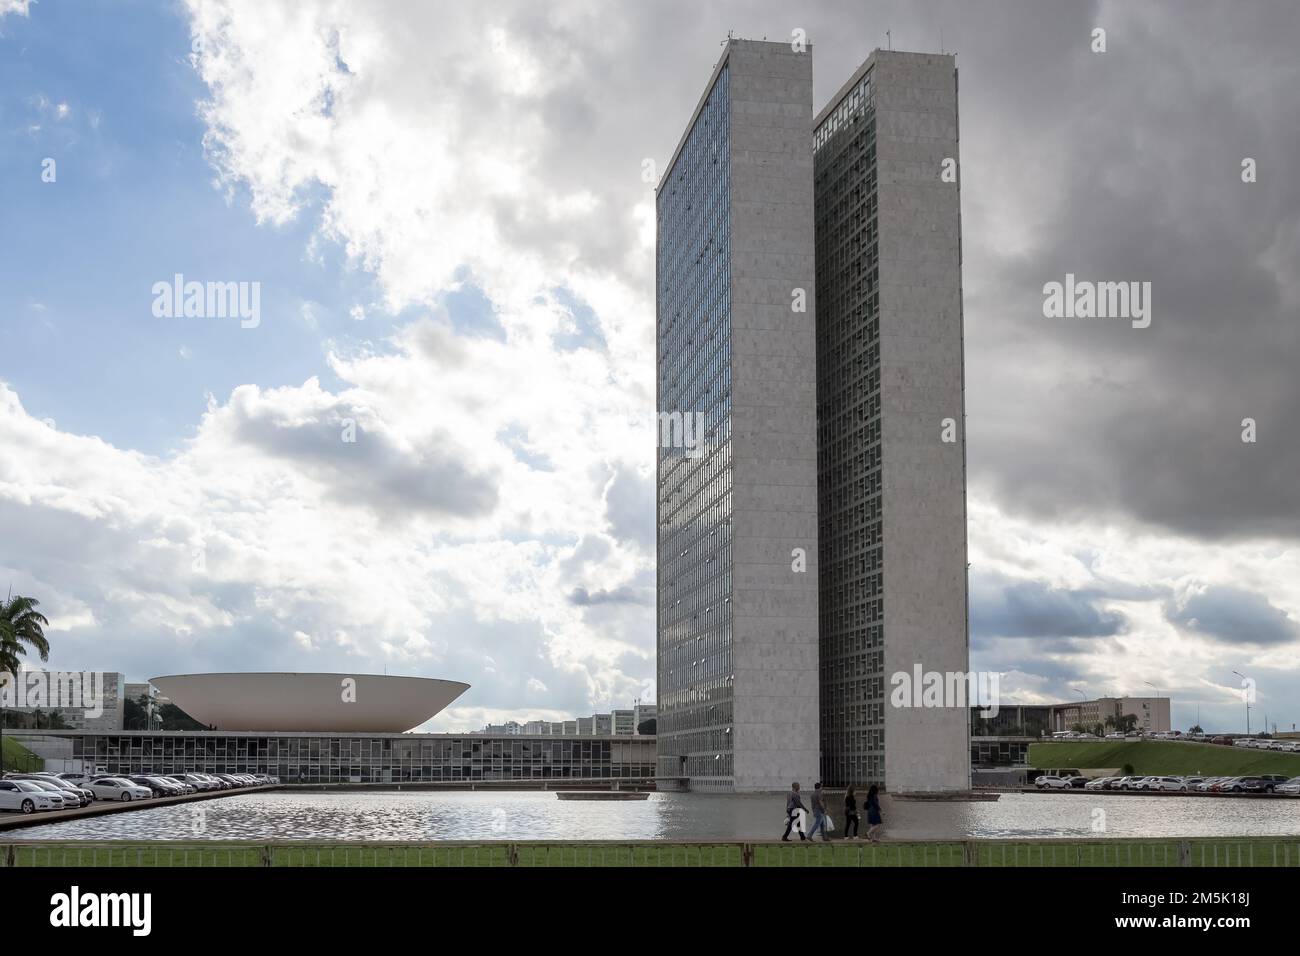 Dettaglio architettonico dell'edificio del Congresso Nazionale del Brasile progettato dall'architetto brasiliano Oscar Niemeyer Foto Stock